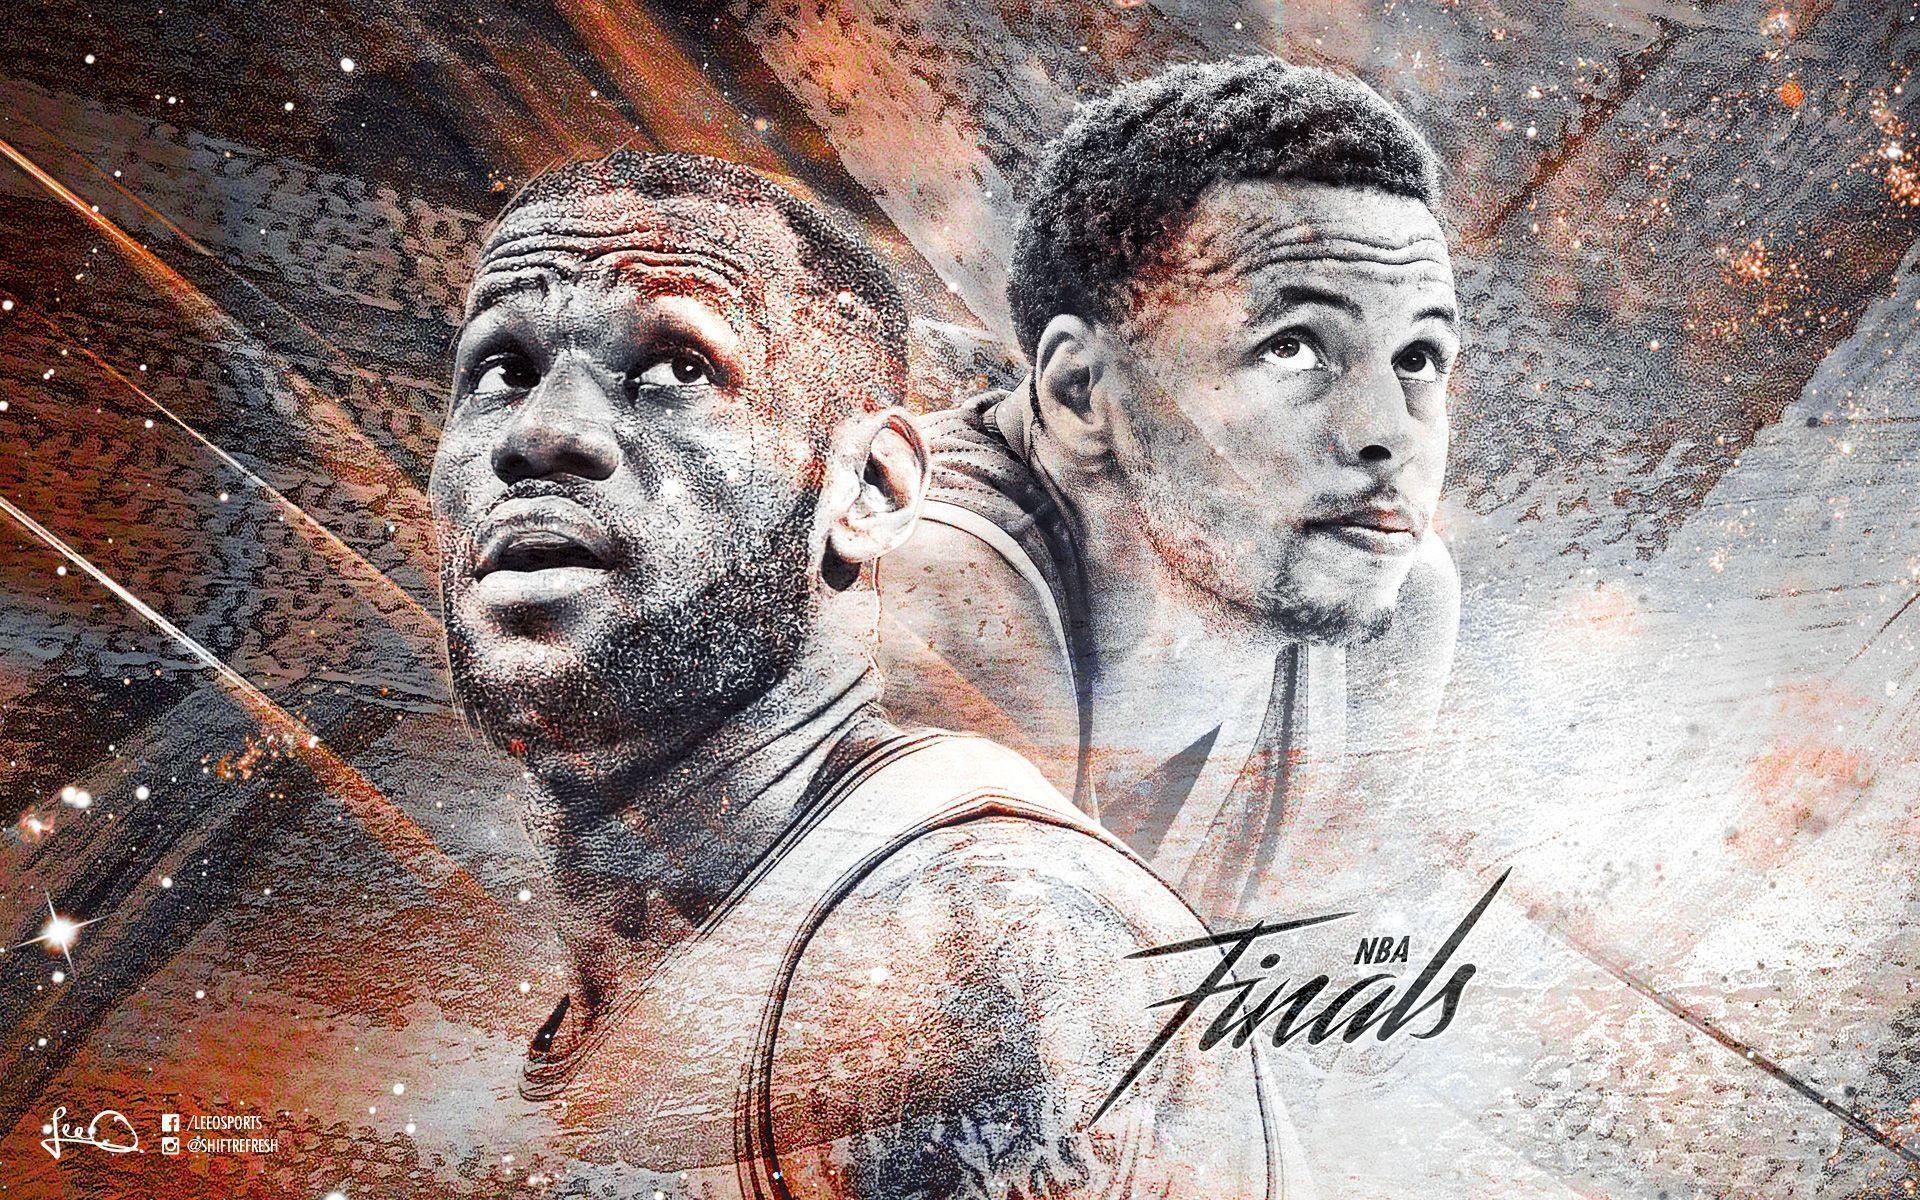 NBA Finals LeBron vs Curry. Basketball Wallpaper at